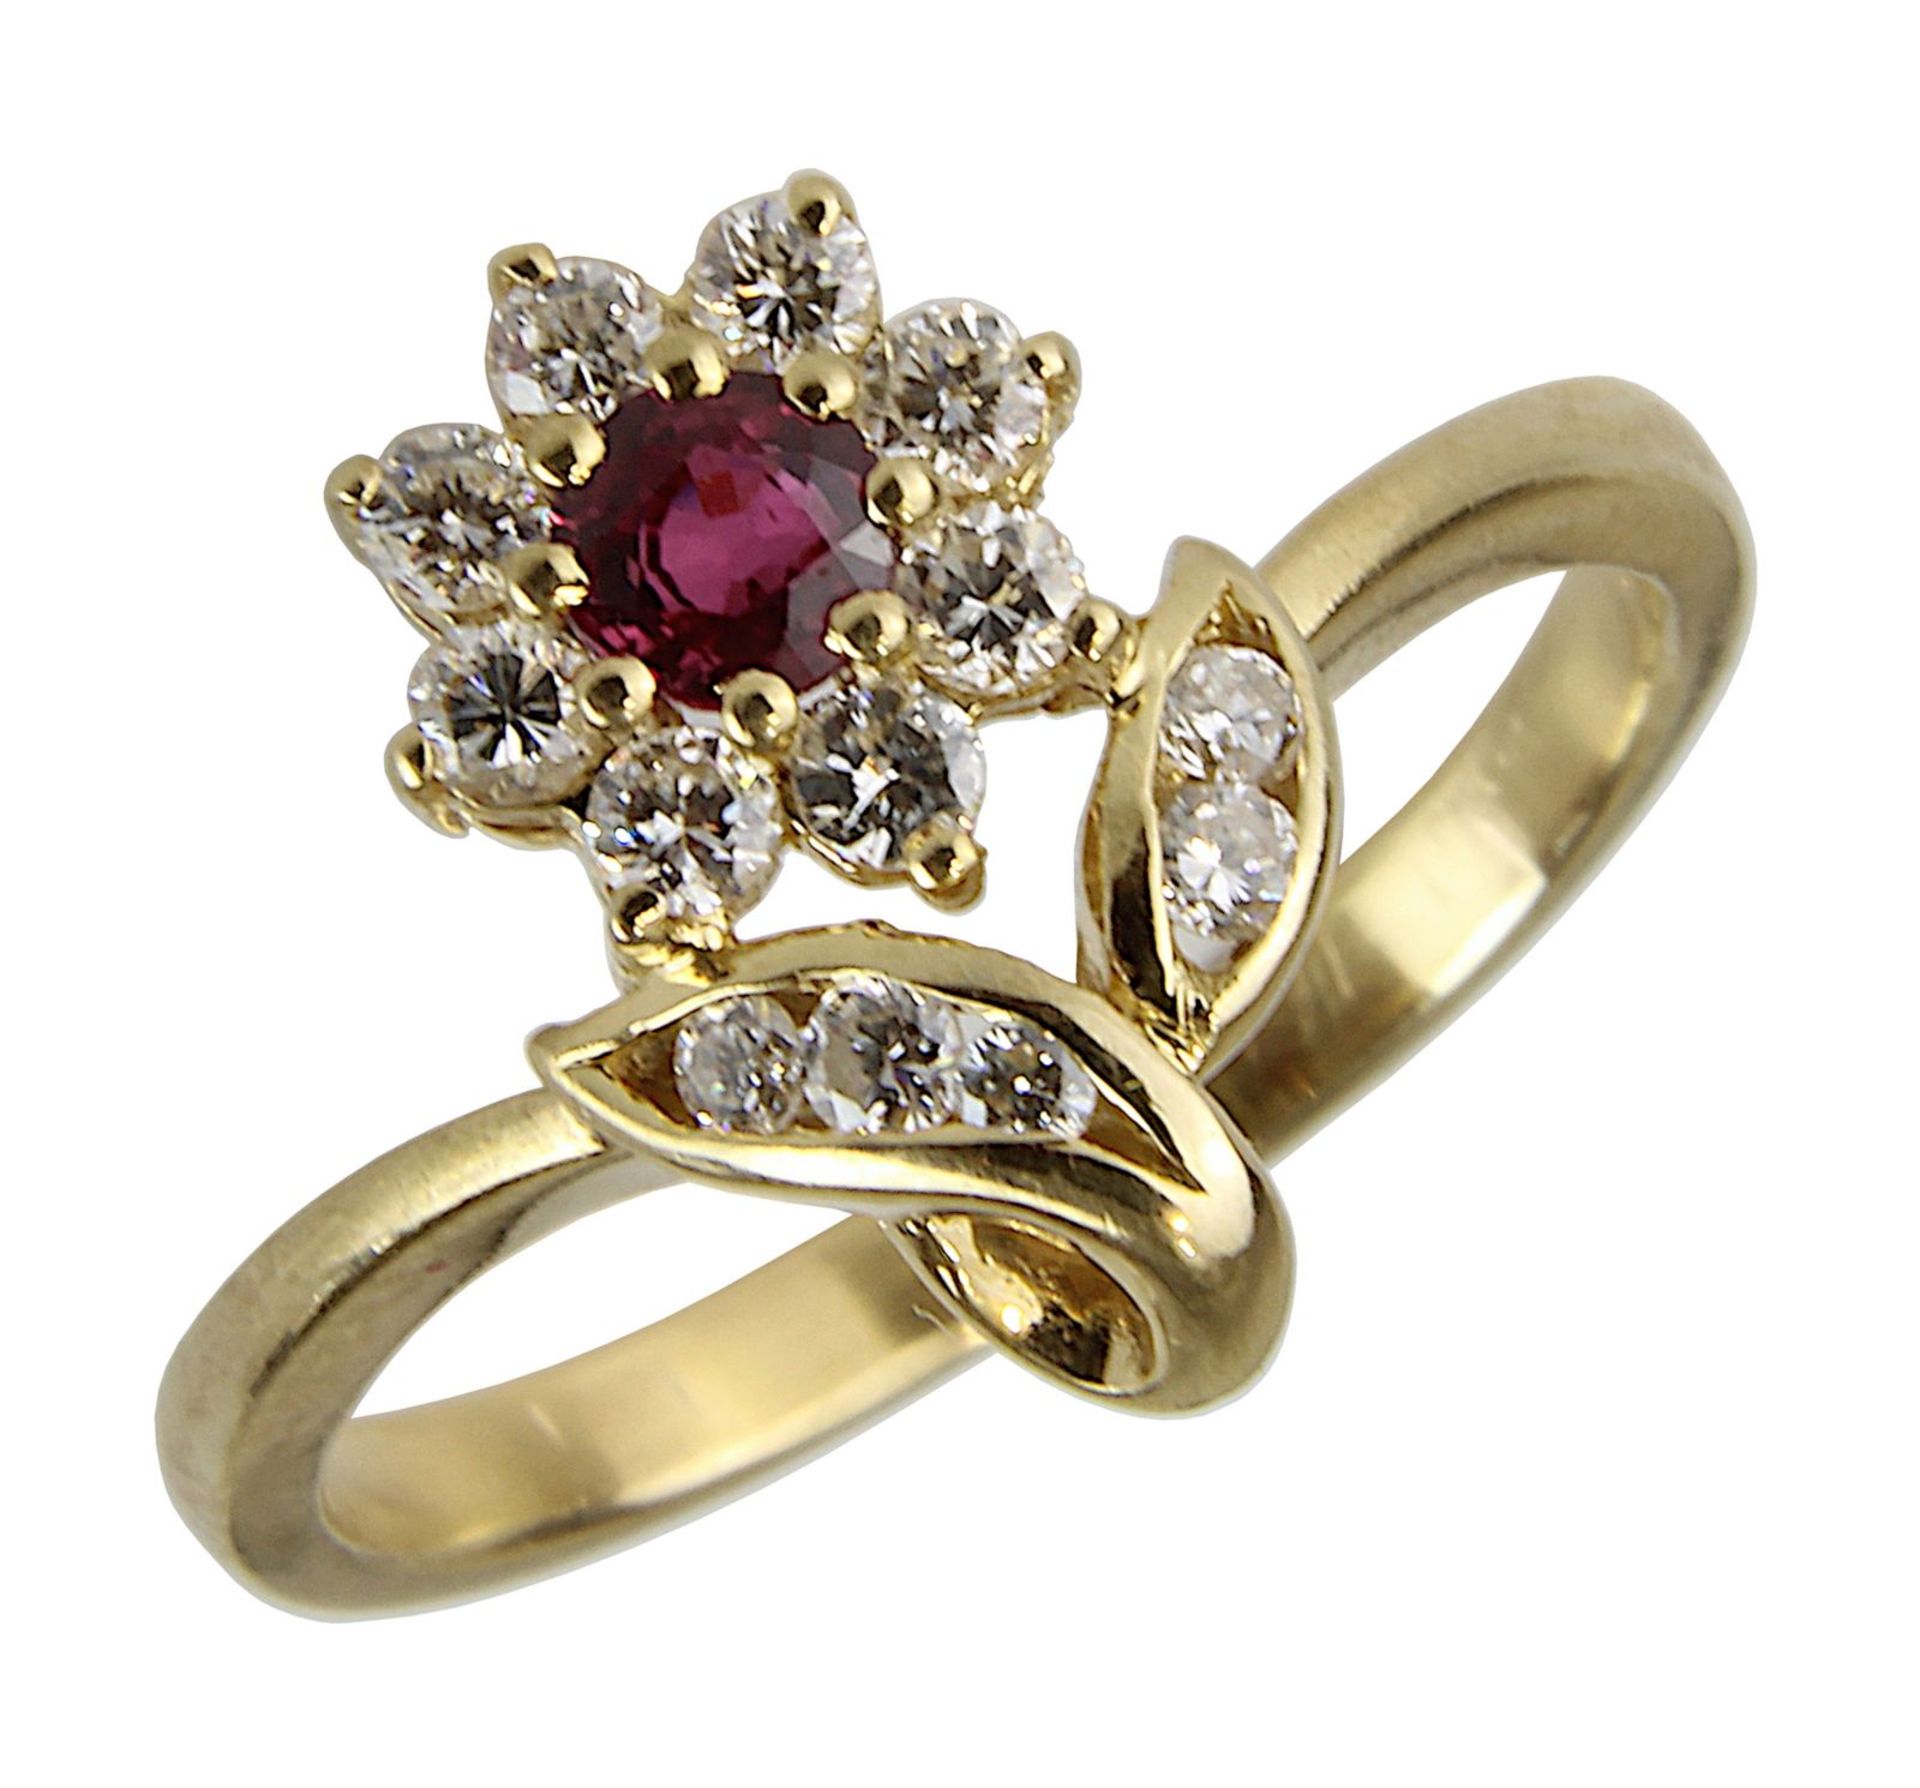 Gelbgold-Damenring mit Rubin und Brillanten, gestempelt 750, Ringkopf in Form einer Blume, besetzt